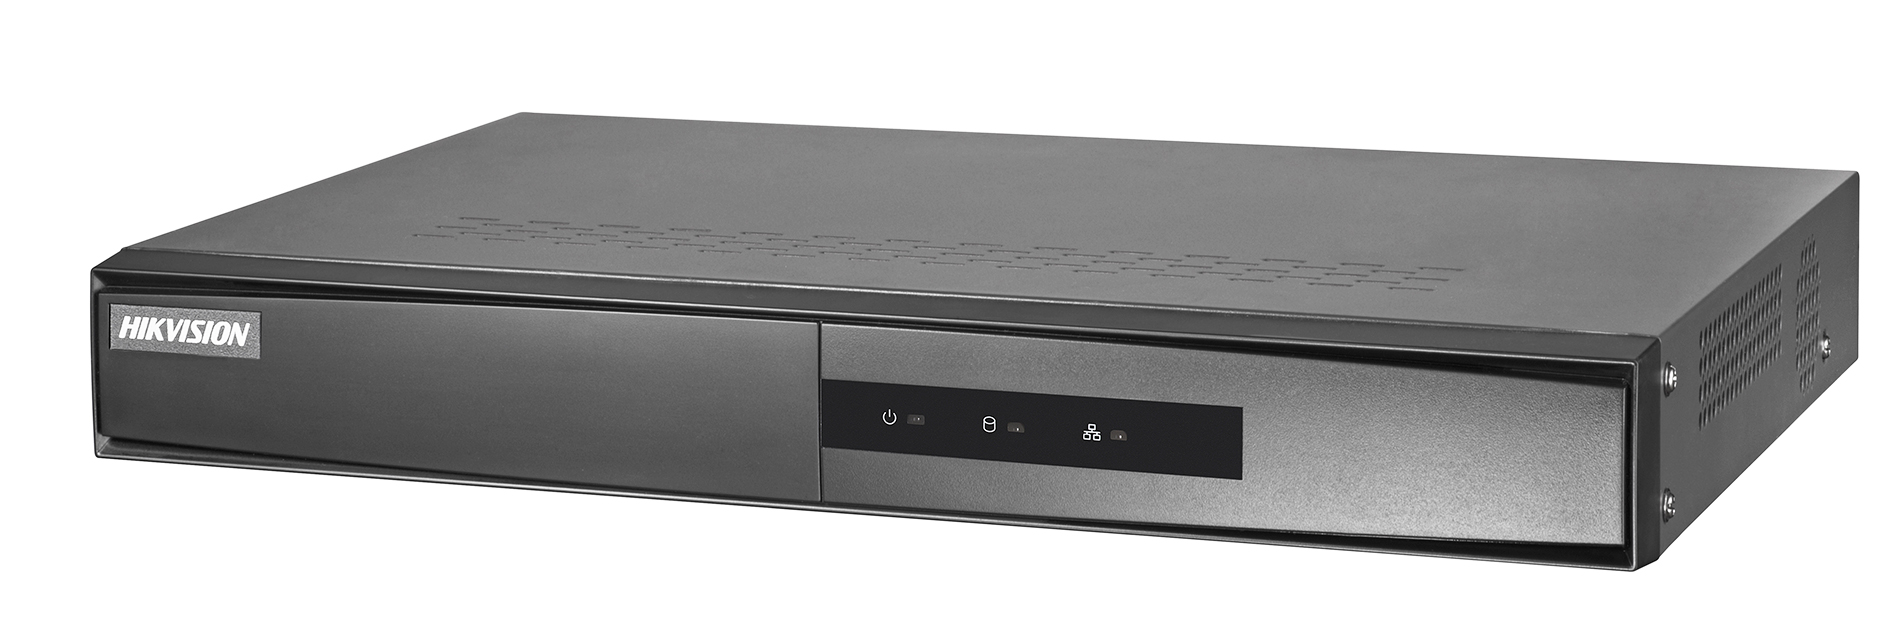 Hikvision DS-7108NI-Q1/M. 8-ми канальный IP-видеорегистратор